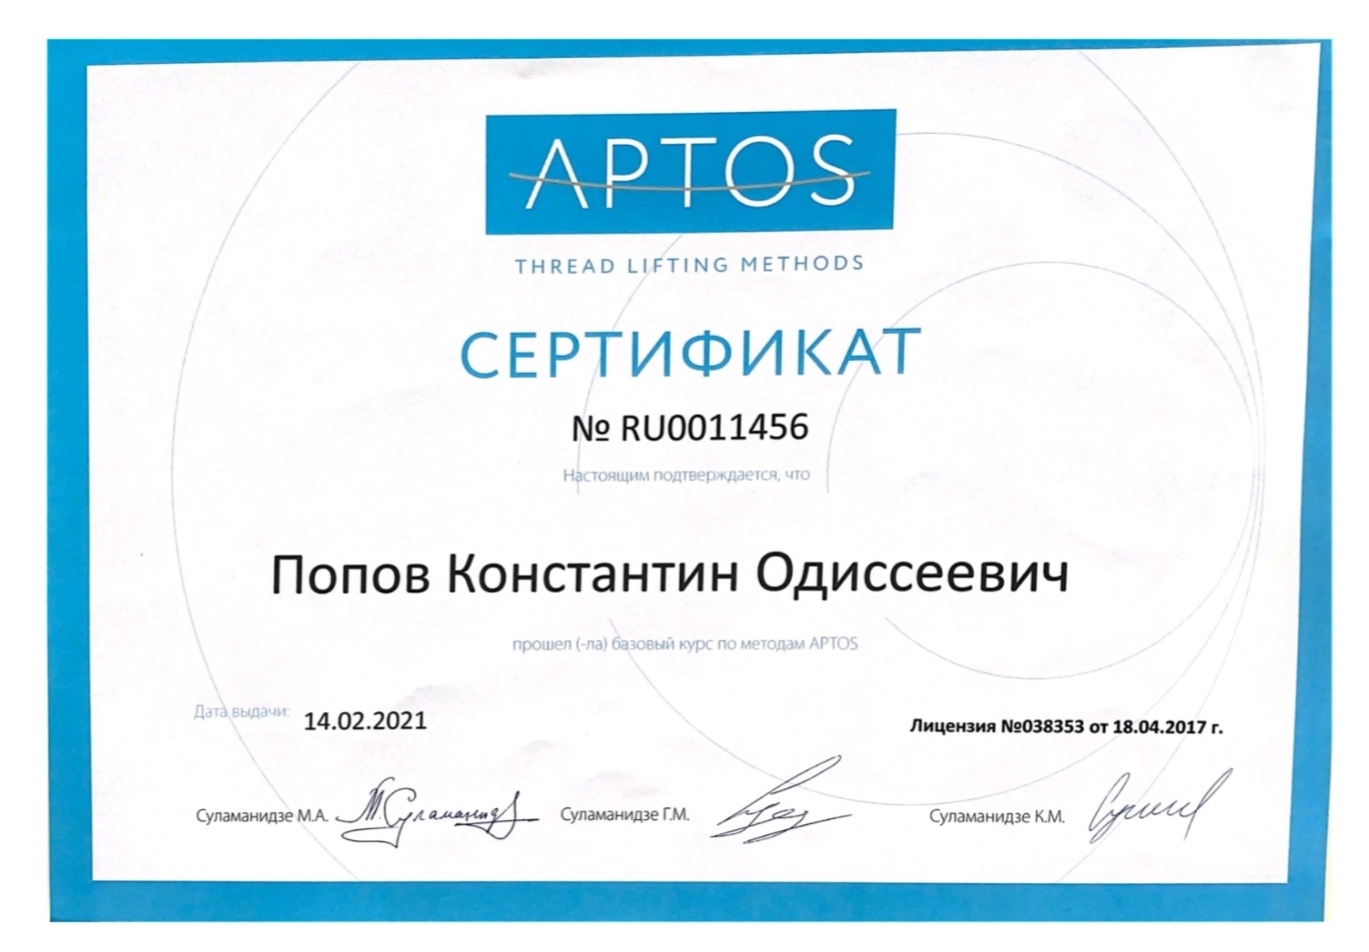 Сертификат APTOS. 2021 г.